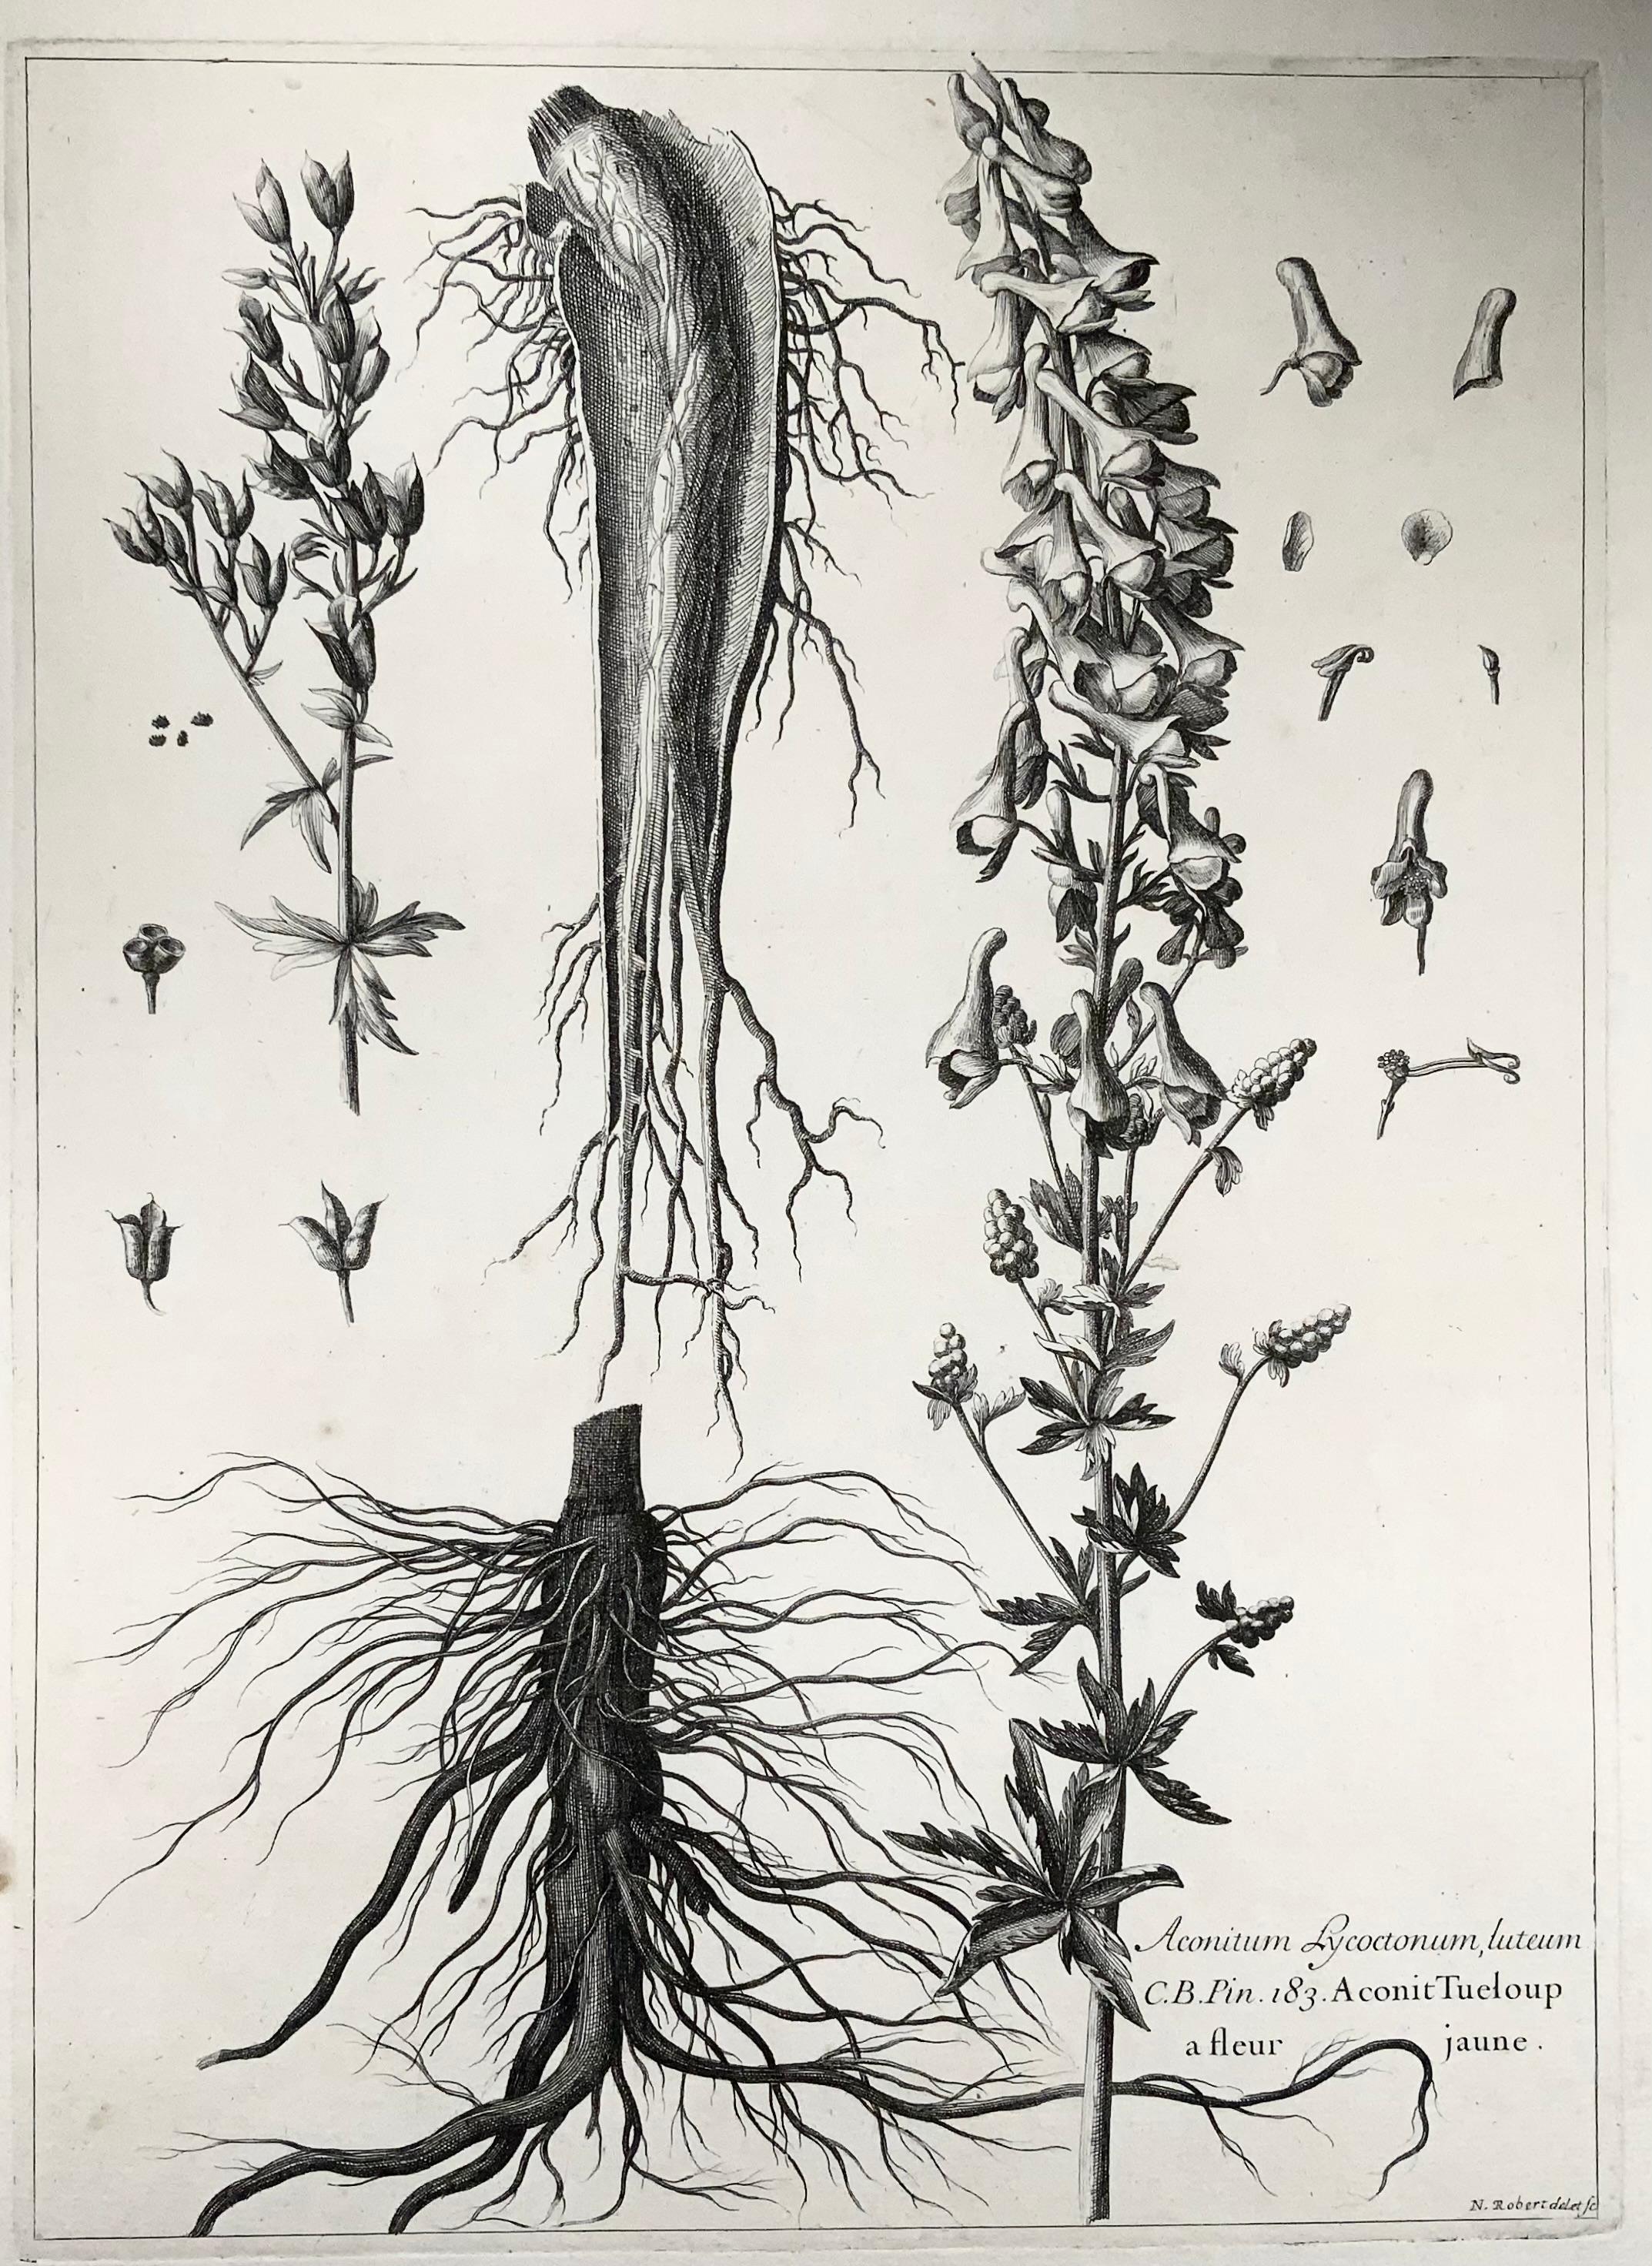 Eisenhut (Aconitum lycoctonum)

Der Eisenhut (Aconitum lycoctonum) ist eine in weiten Teilen Europas und Nordasiens beheimatete Pflanzenart aus der Gattung der Eisenhüte (Aconitum) in der Familie der Hahnenfußgewächse (Ranunculaceae). Sie kommt im